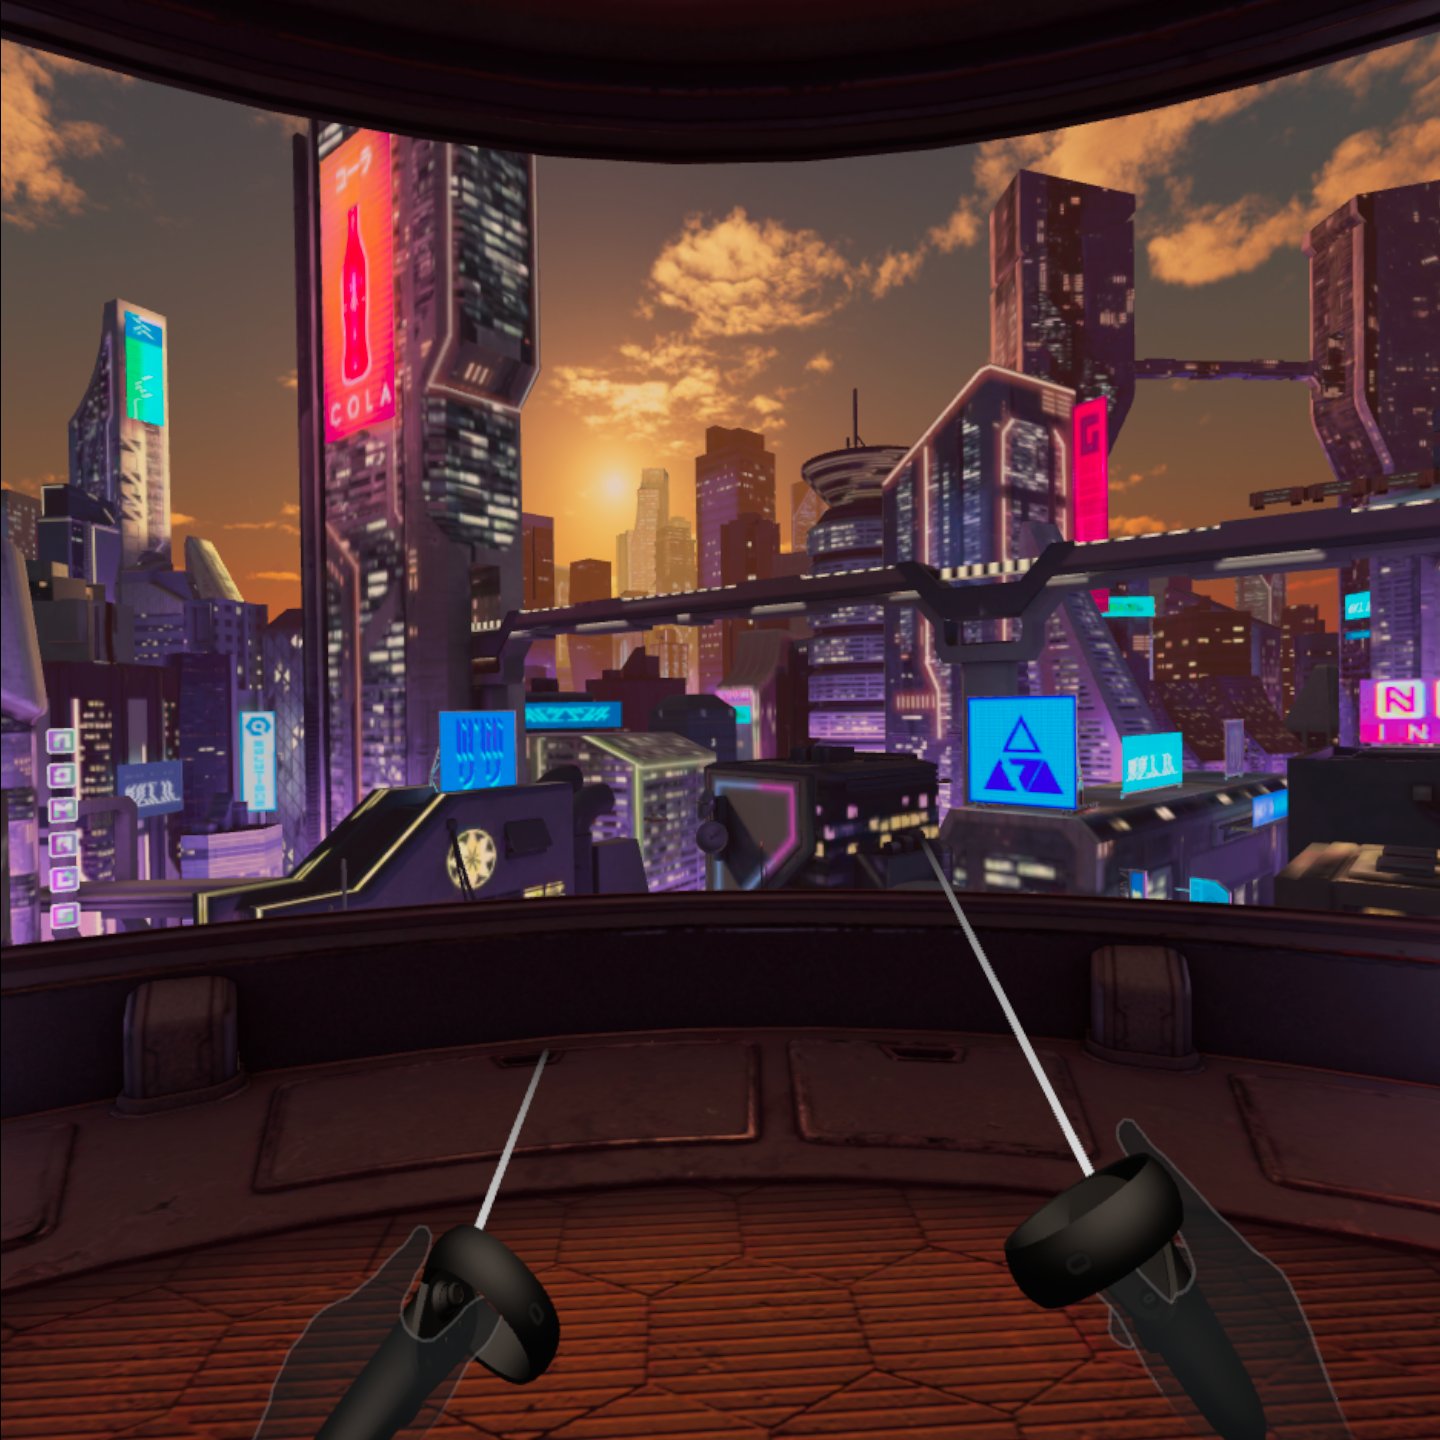 Quest vr game. VR Oculus Quest 2. VR Oculus Quest 2 комната. Компьютерные игры и реальность. Индустрия компьютерных игр-2020.